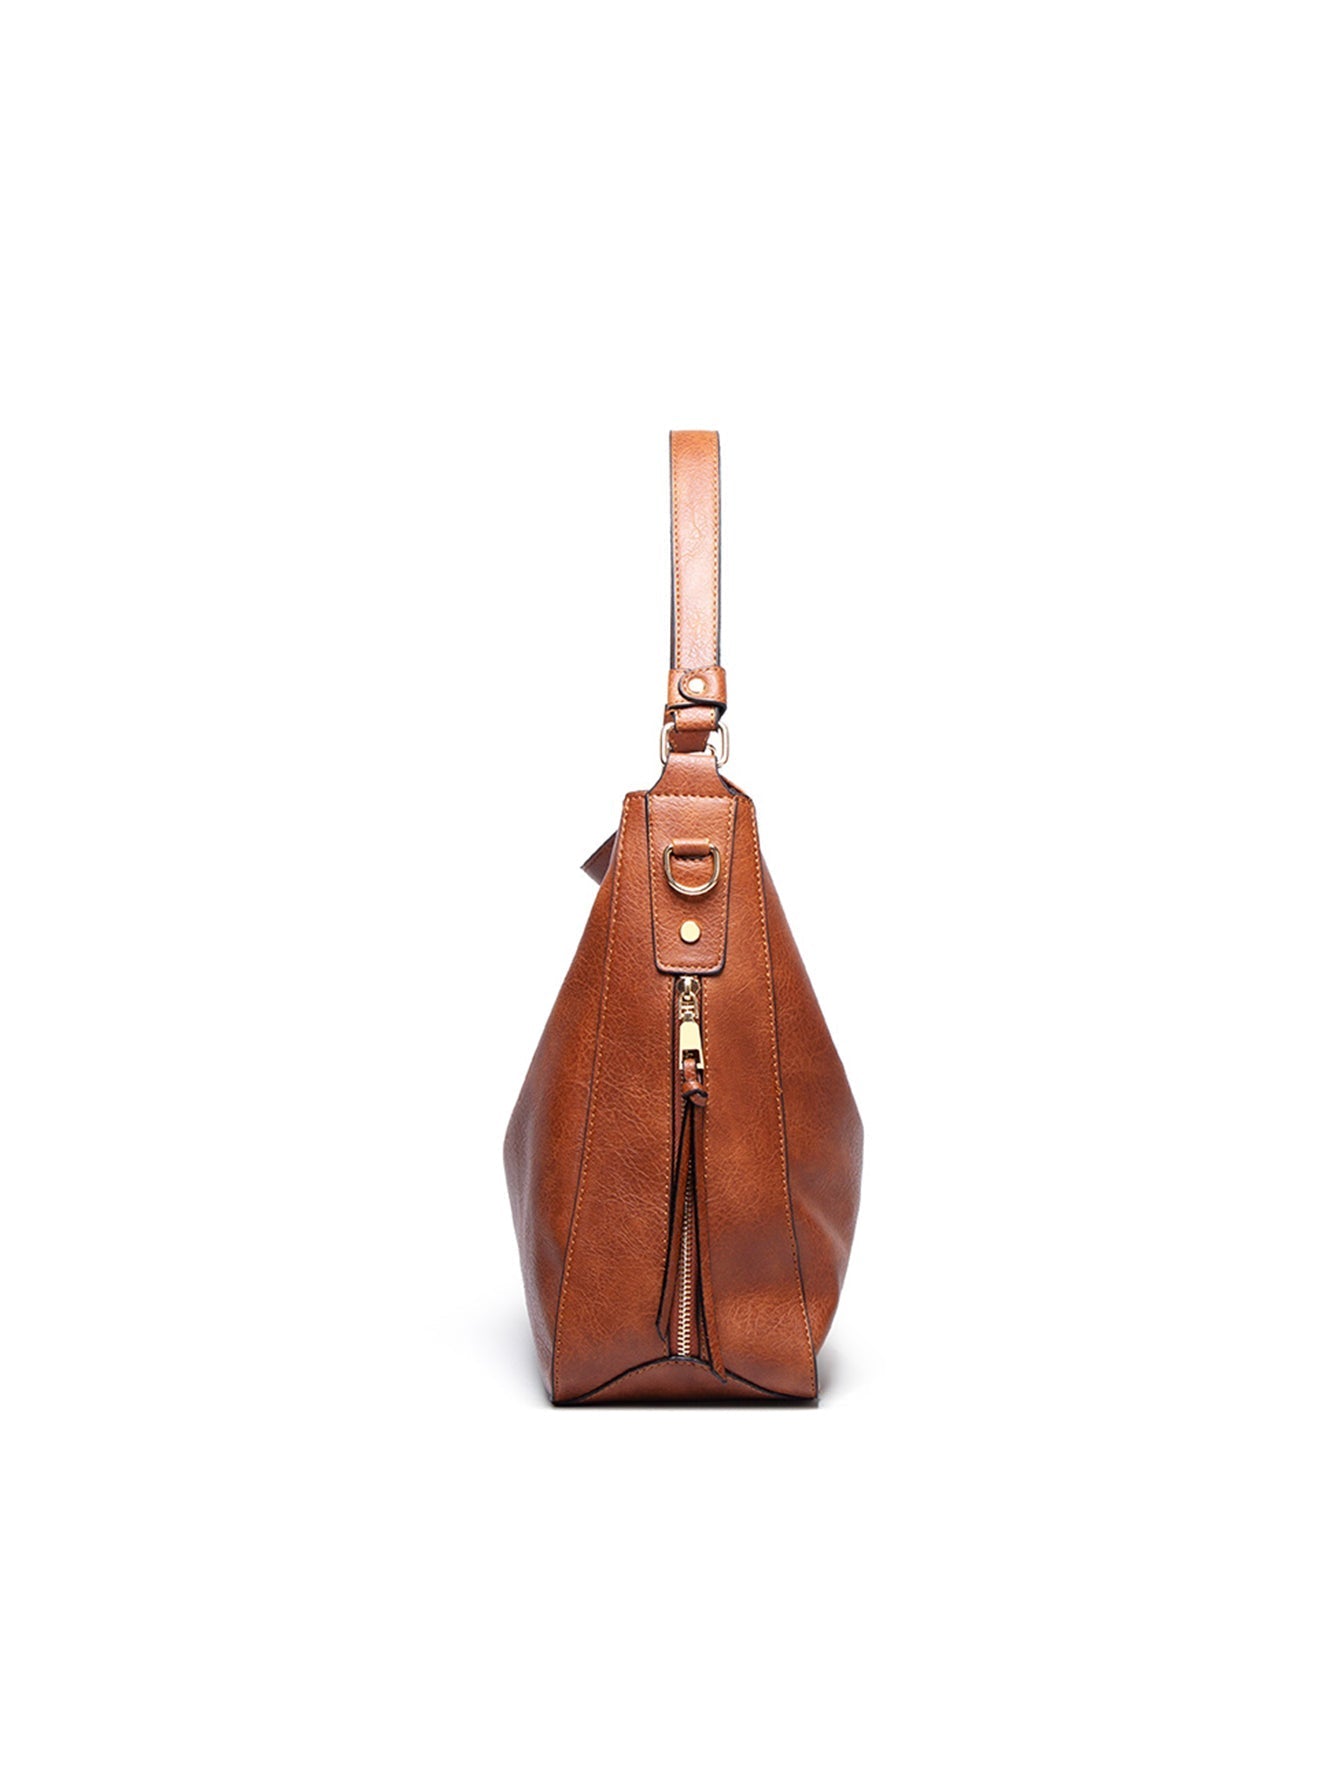 Women Shoulder Bags Tote Handbags Large Capacity Bags Sai Feel